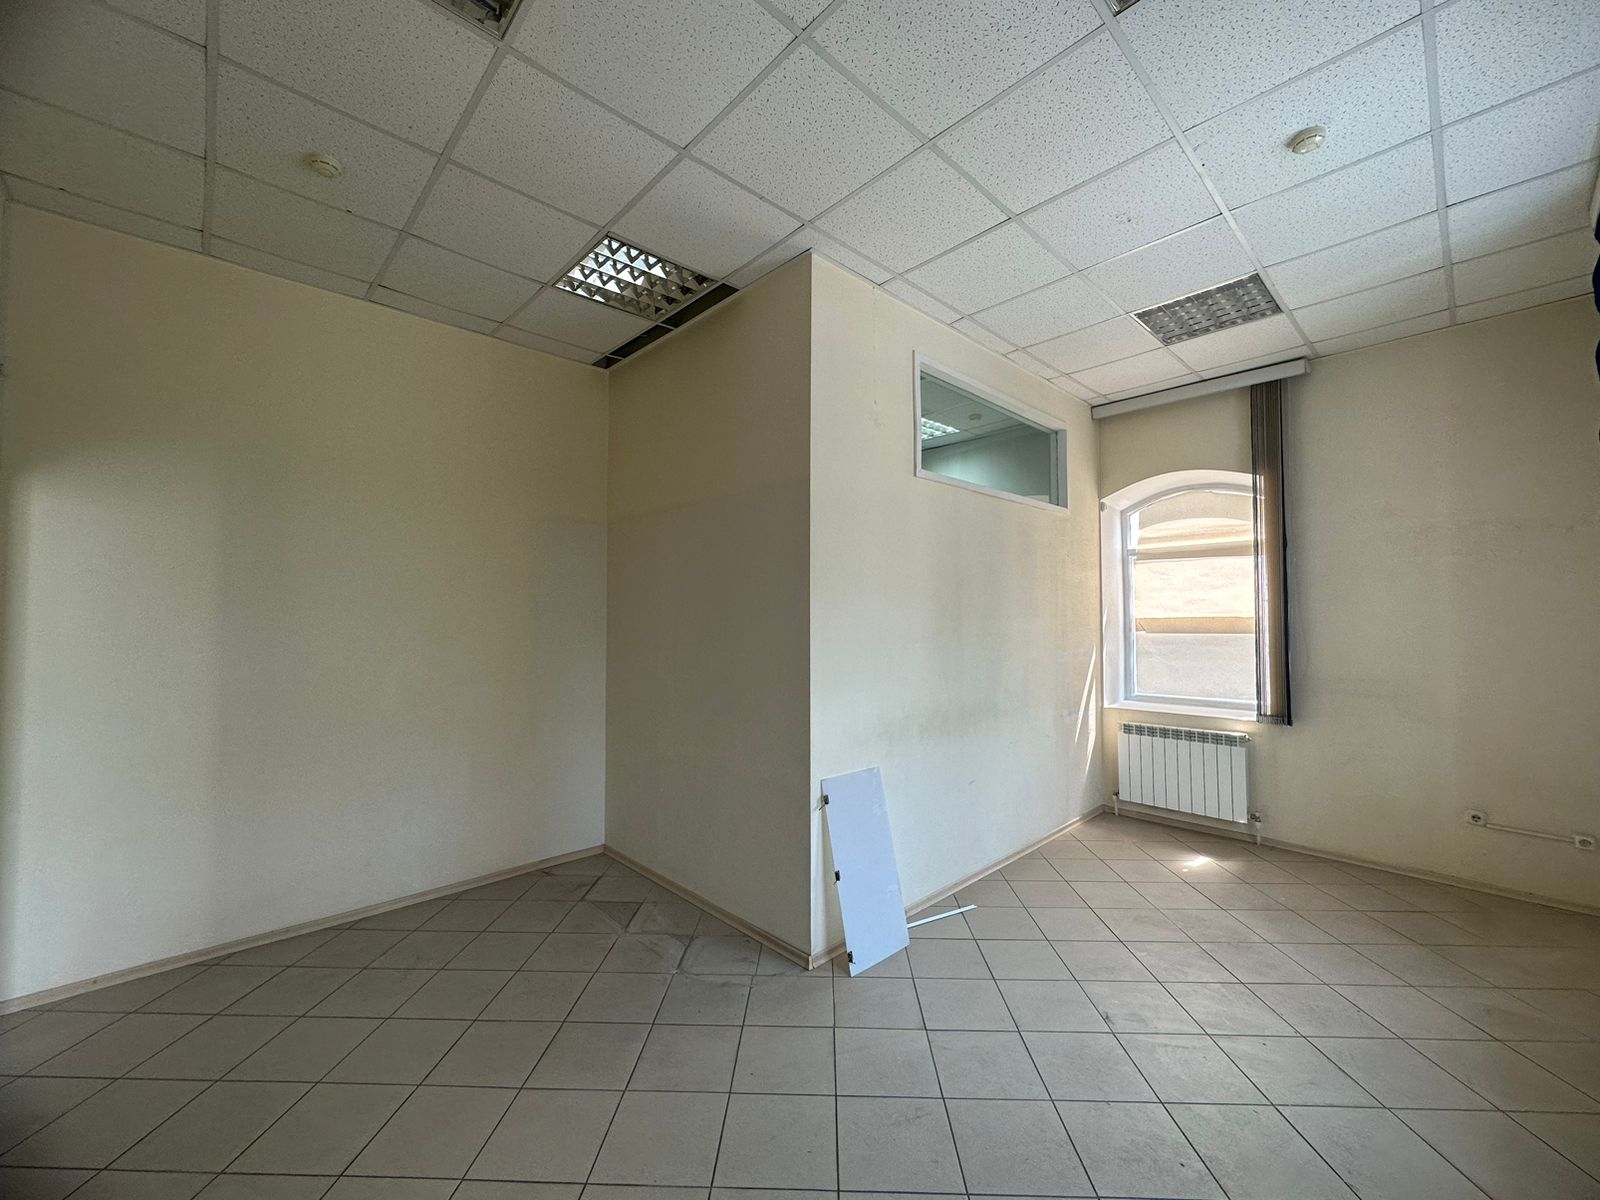 Предлагаем к аренде офисы на 2ом этаже по ул. Карла Маркса д.53, площадью 20 м², напрямую от собственника._7